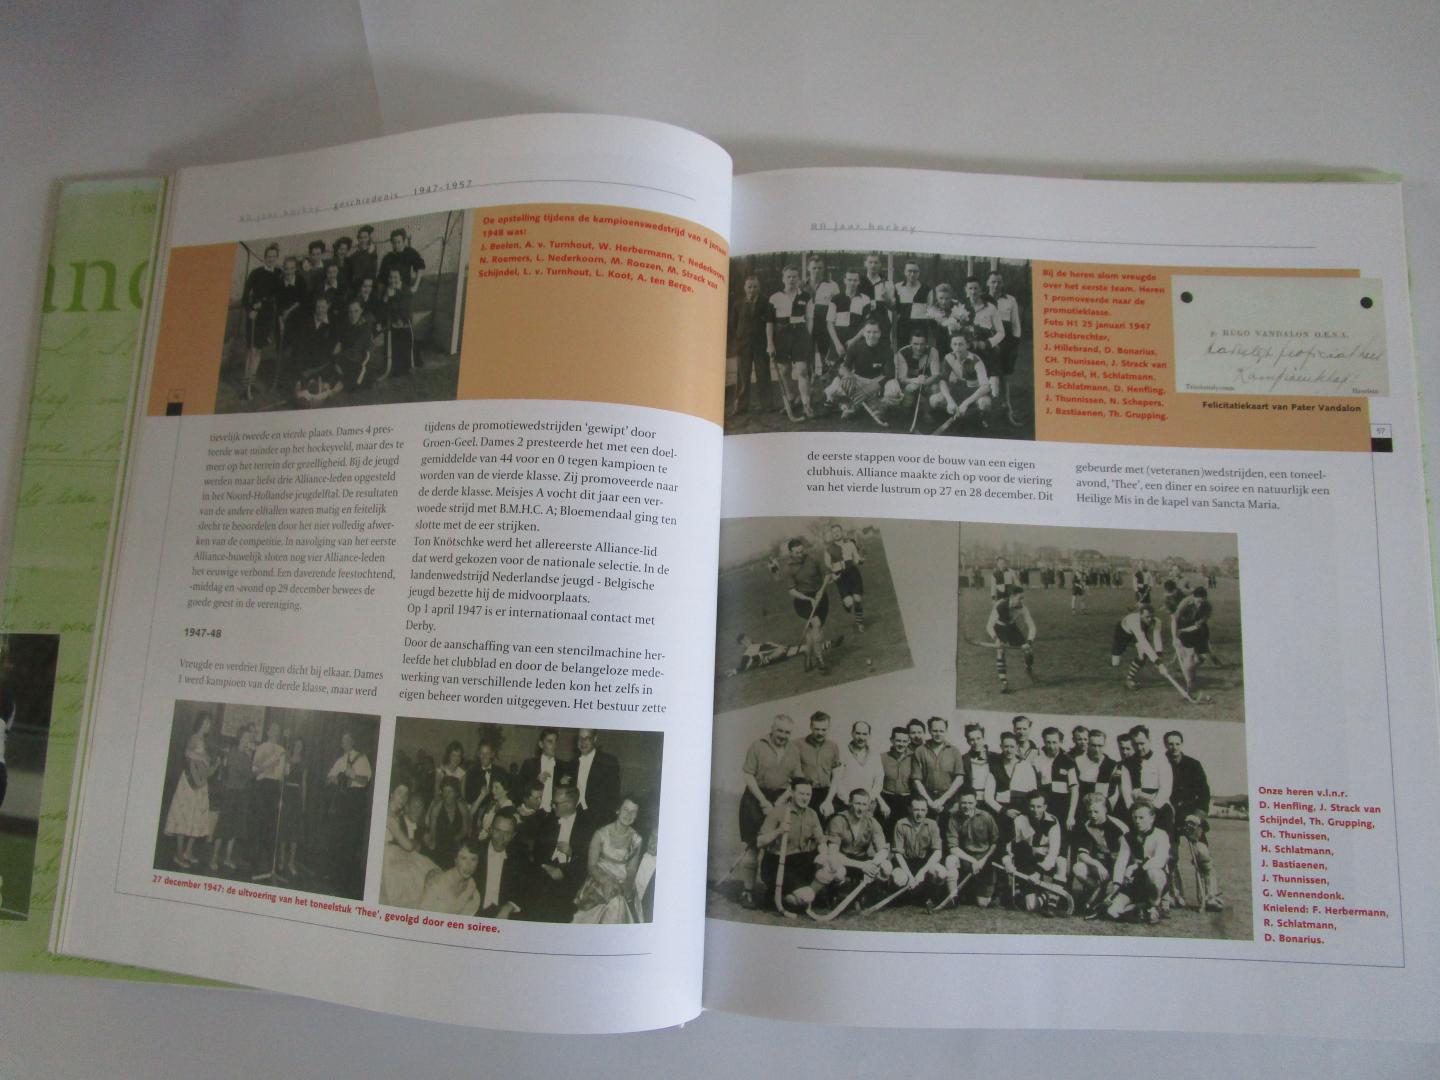 Janssen, Walter (redactie) - Alliance - 80 jaarhockey -  1927-2007  De geschiedenis van een bloeiende Hockeyclub (Heemstede)